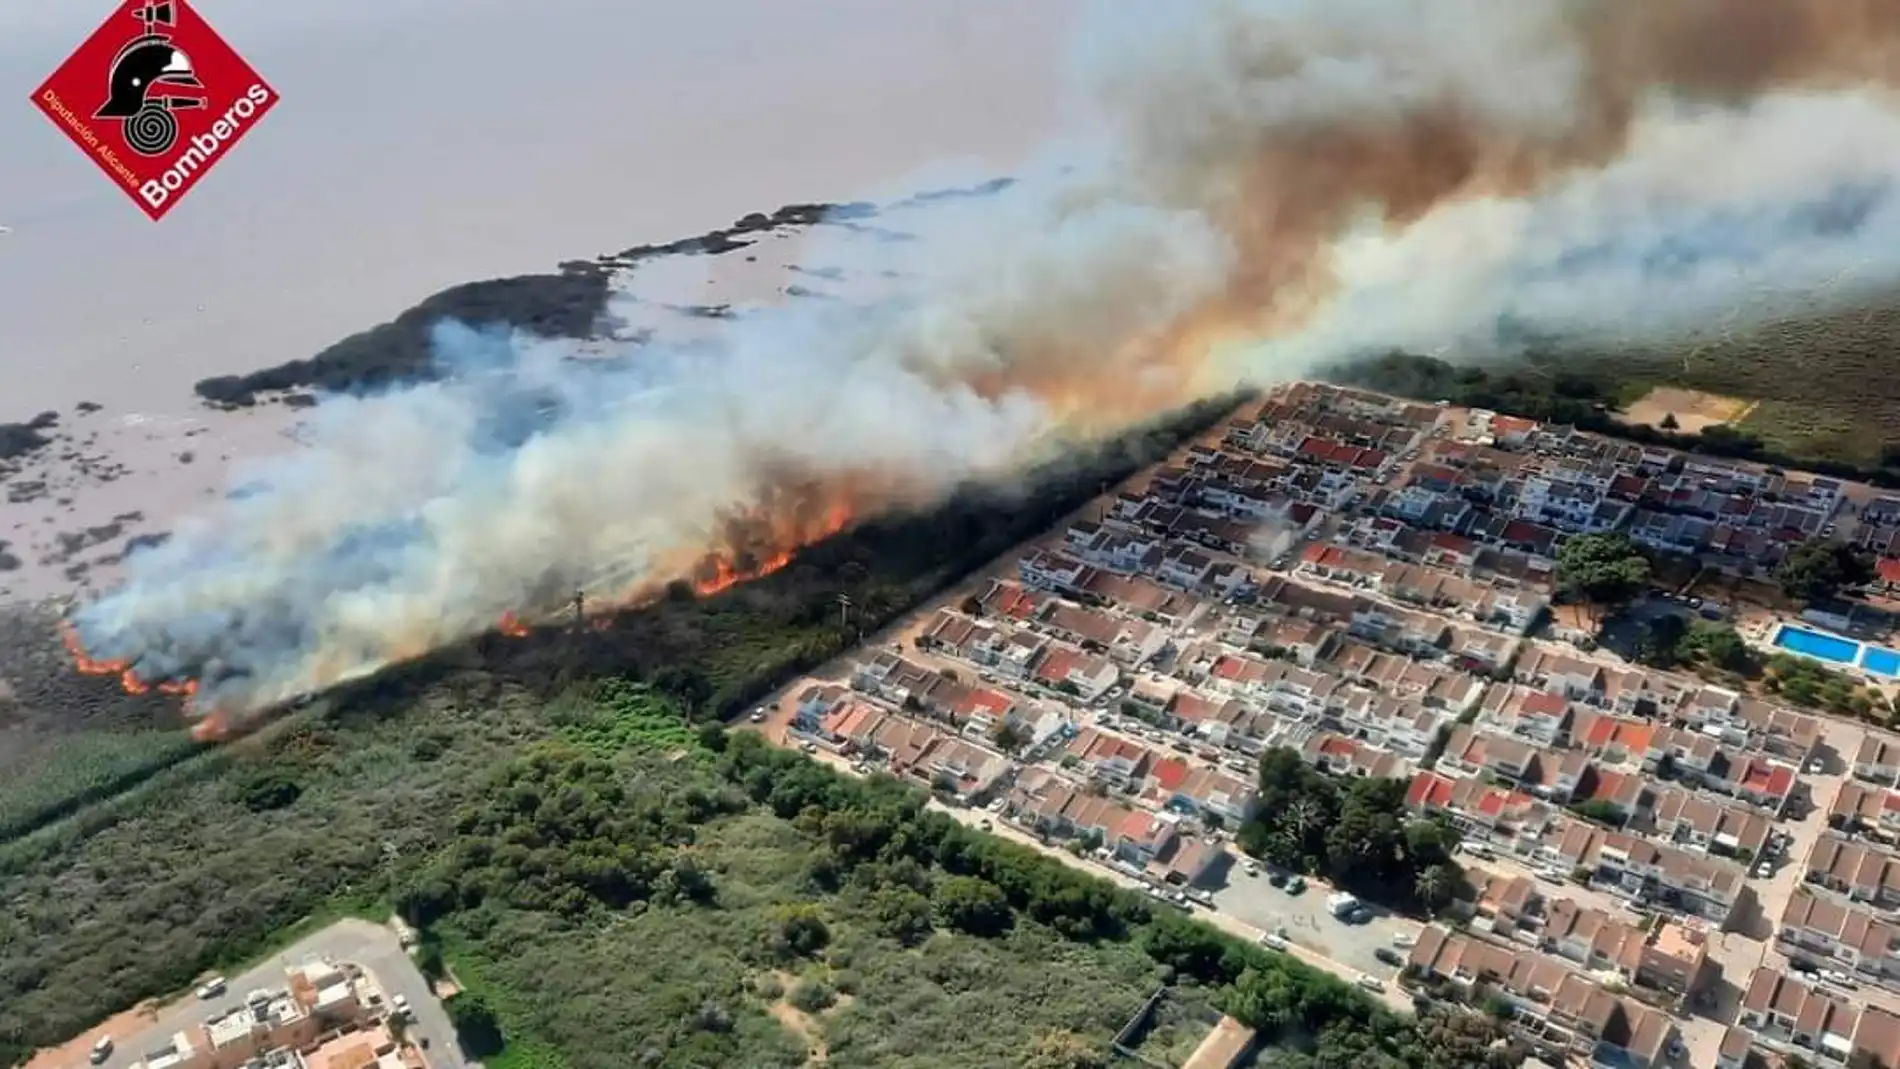 Afecta al Parque Natural Lagunas de la Mata, próximo a urbanizaciones de viviendas. El fuego ha obligado a activar el plan 1 del PEIF. 